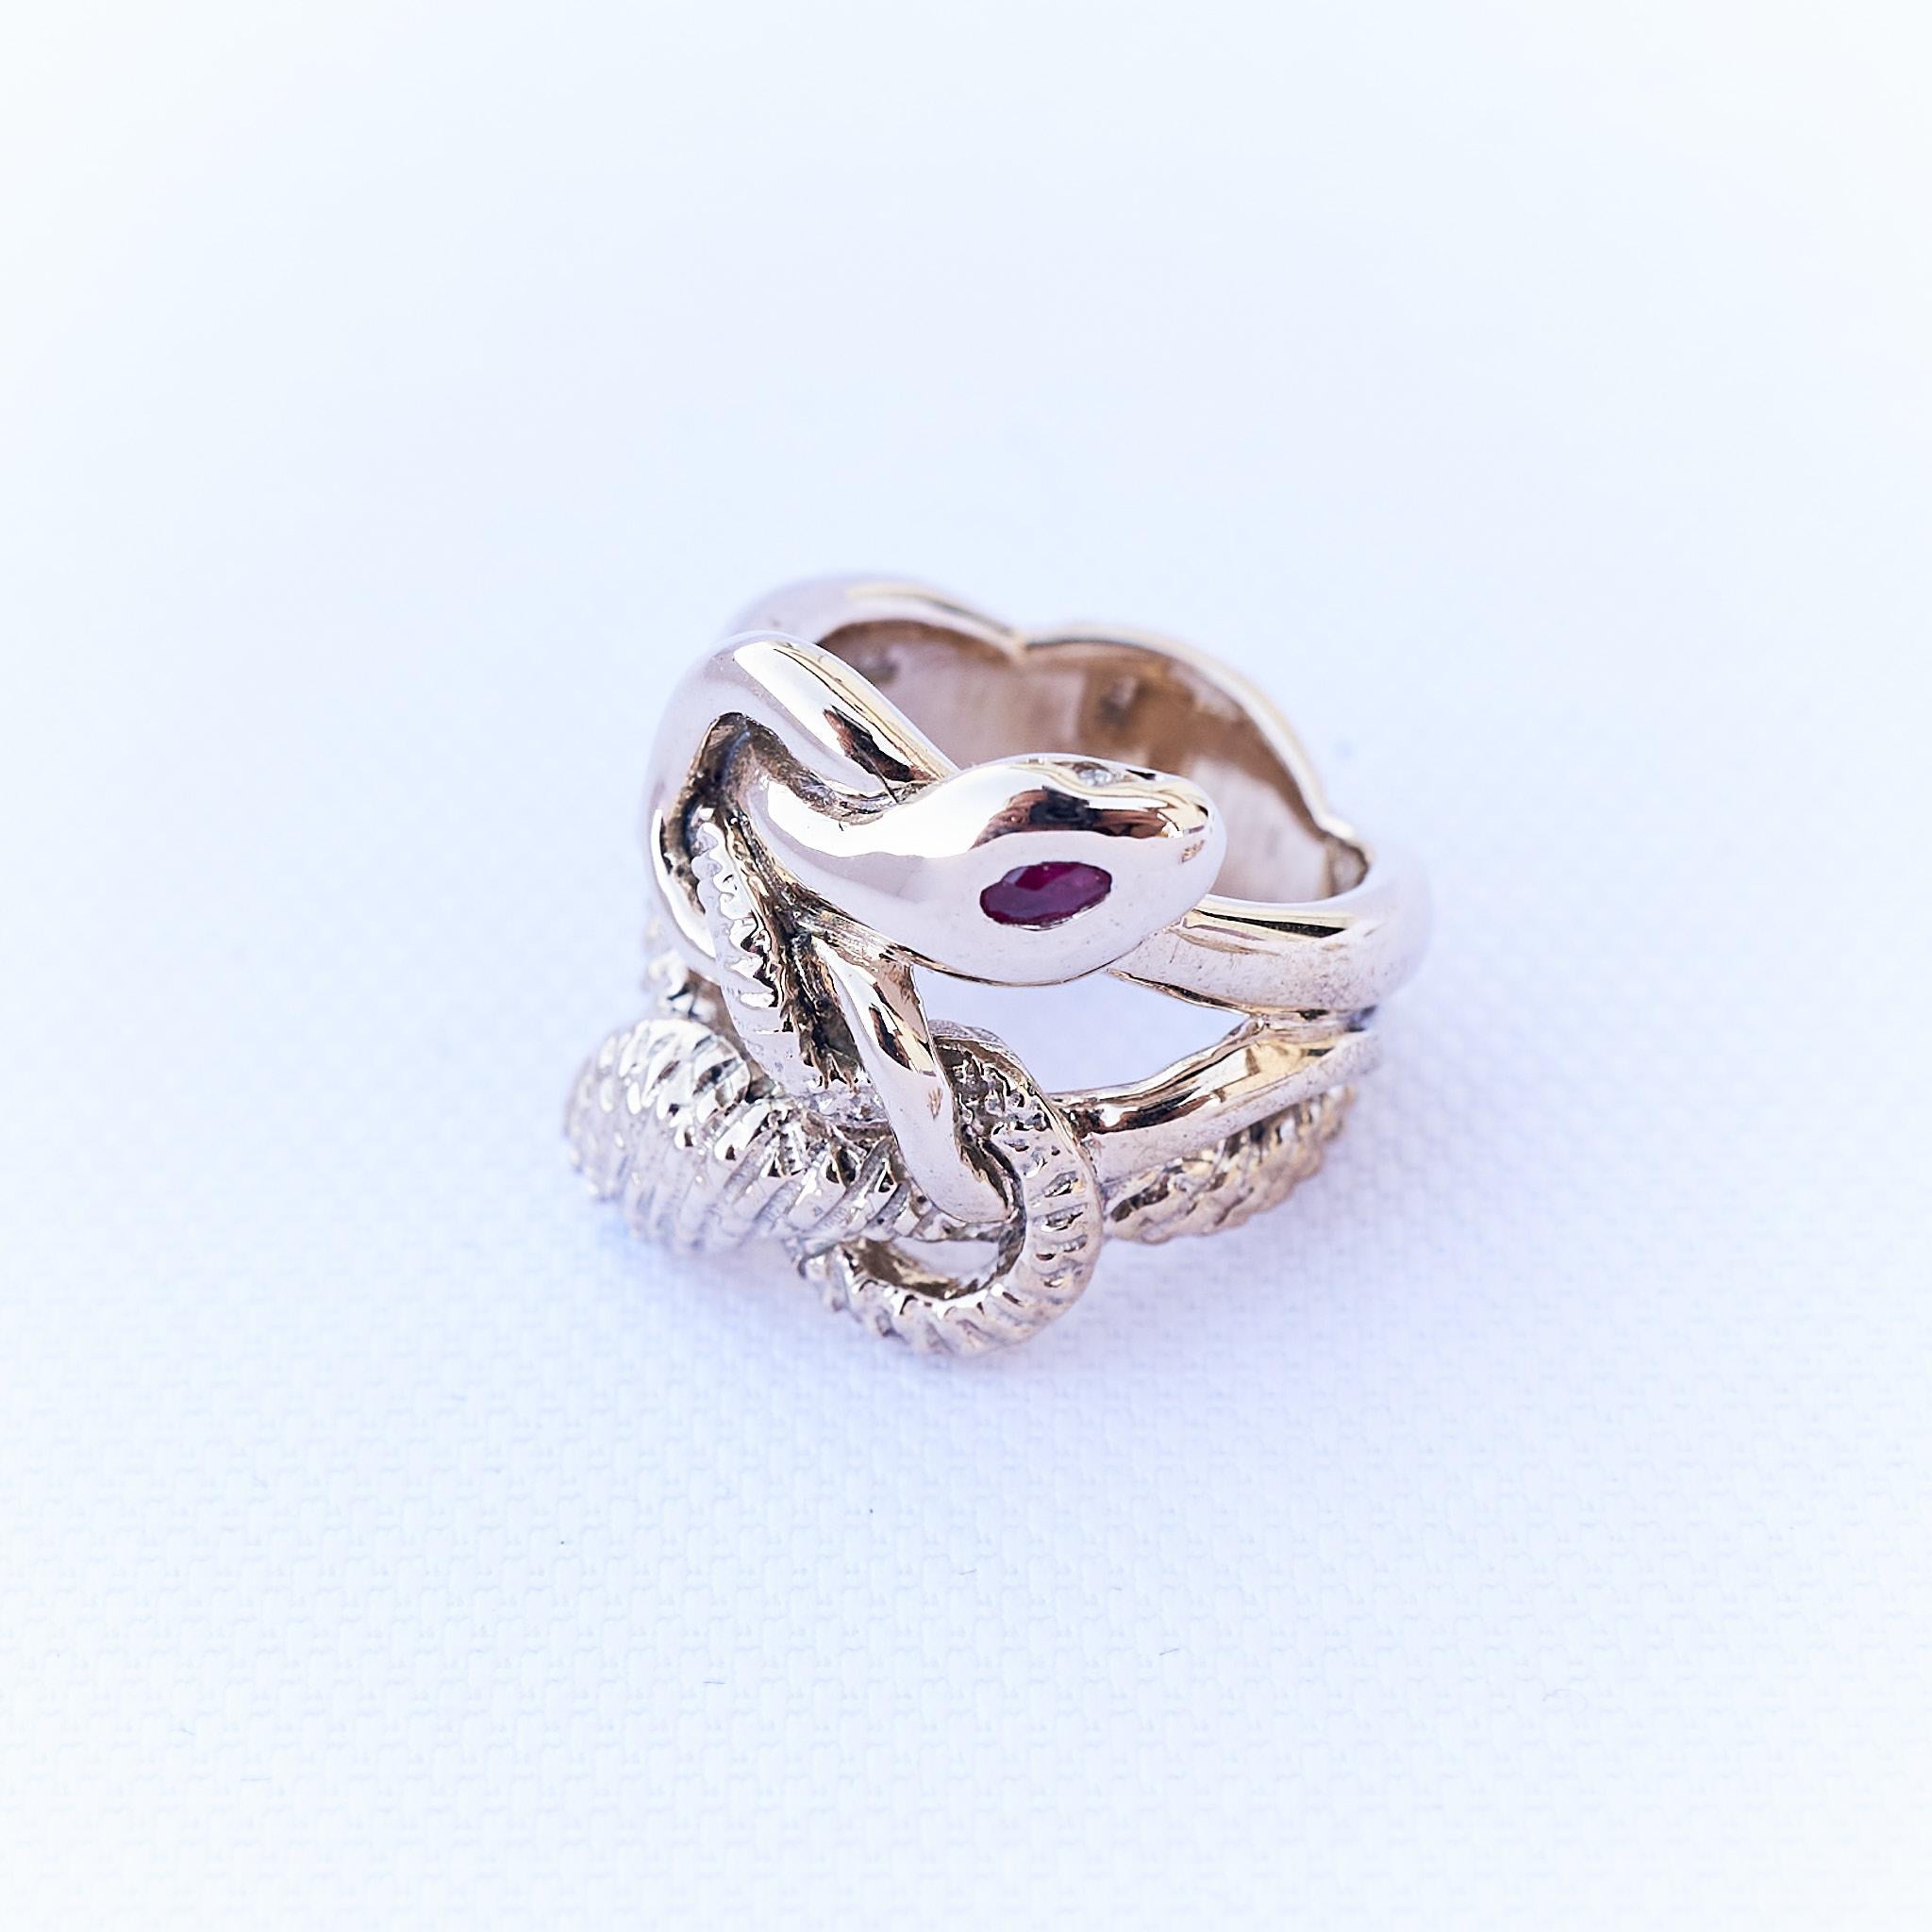 Rubin Marquis Smaragd Weiß Diamant Schlange Ring 
Stil: Cocktail-Ring 
Material: Polierte Bronze 
Designer: J Dauphin

J Dauphin-Schmuck wird in Los Angeles handgefertigt und wurde von der Designerin Johanna Dauphin entworfen. Die meisten